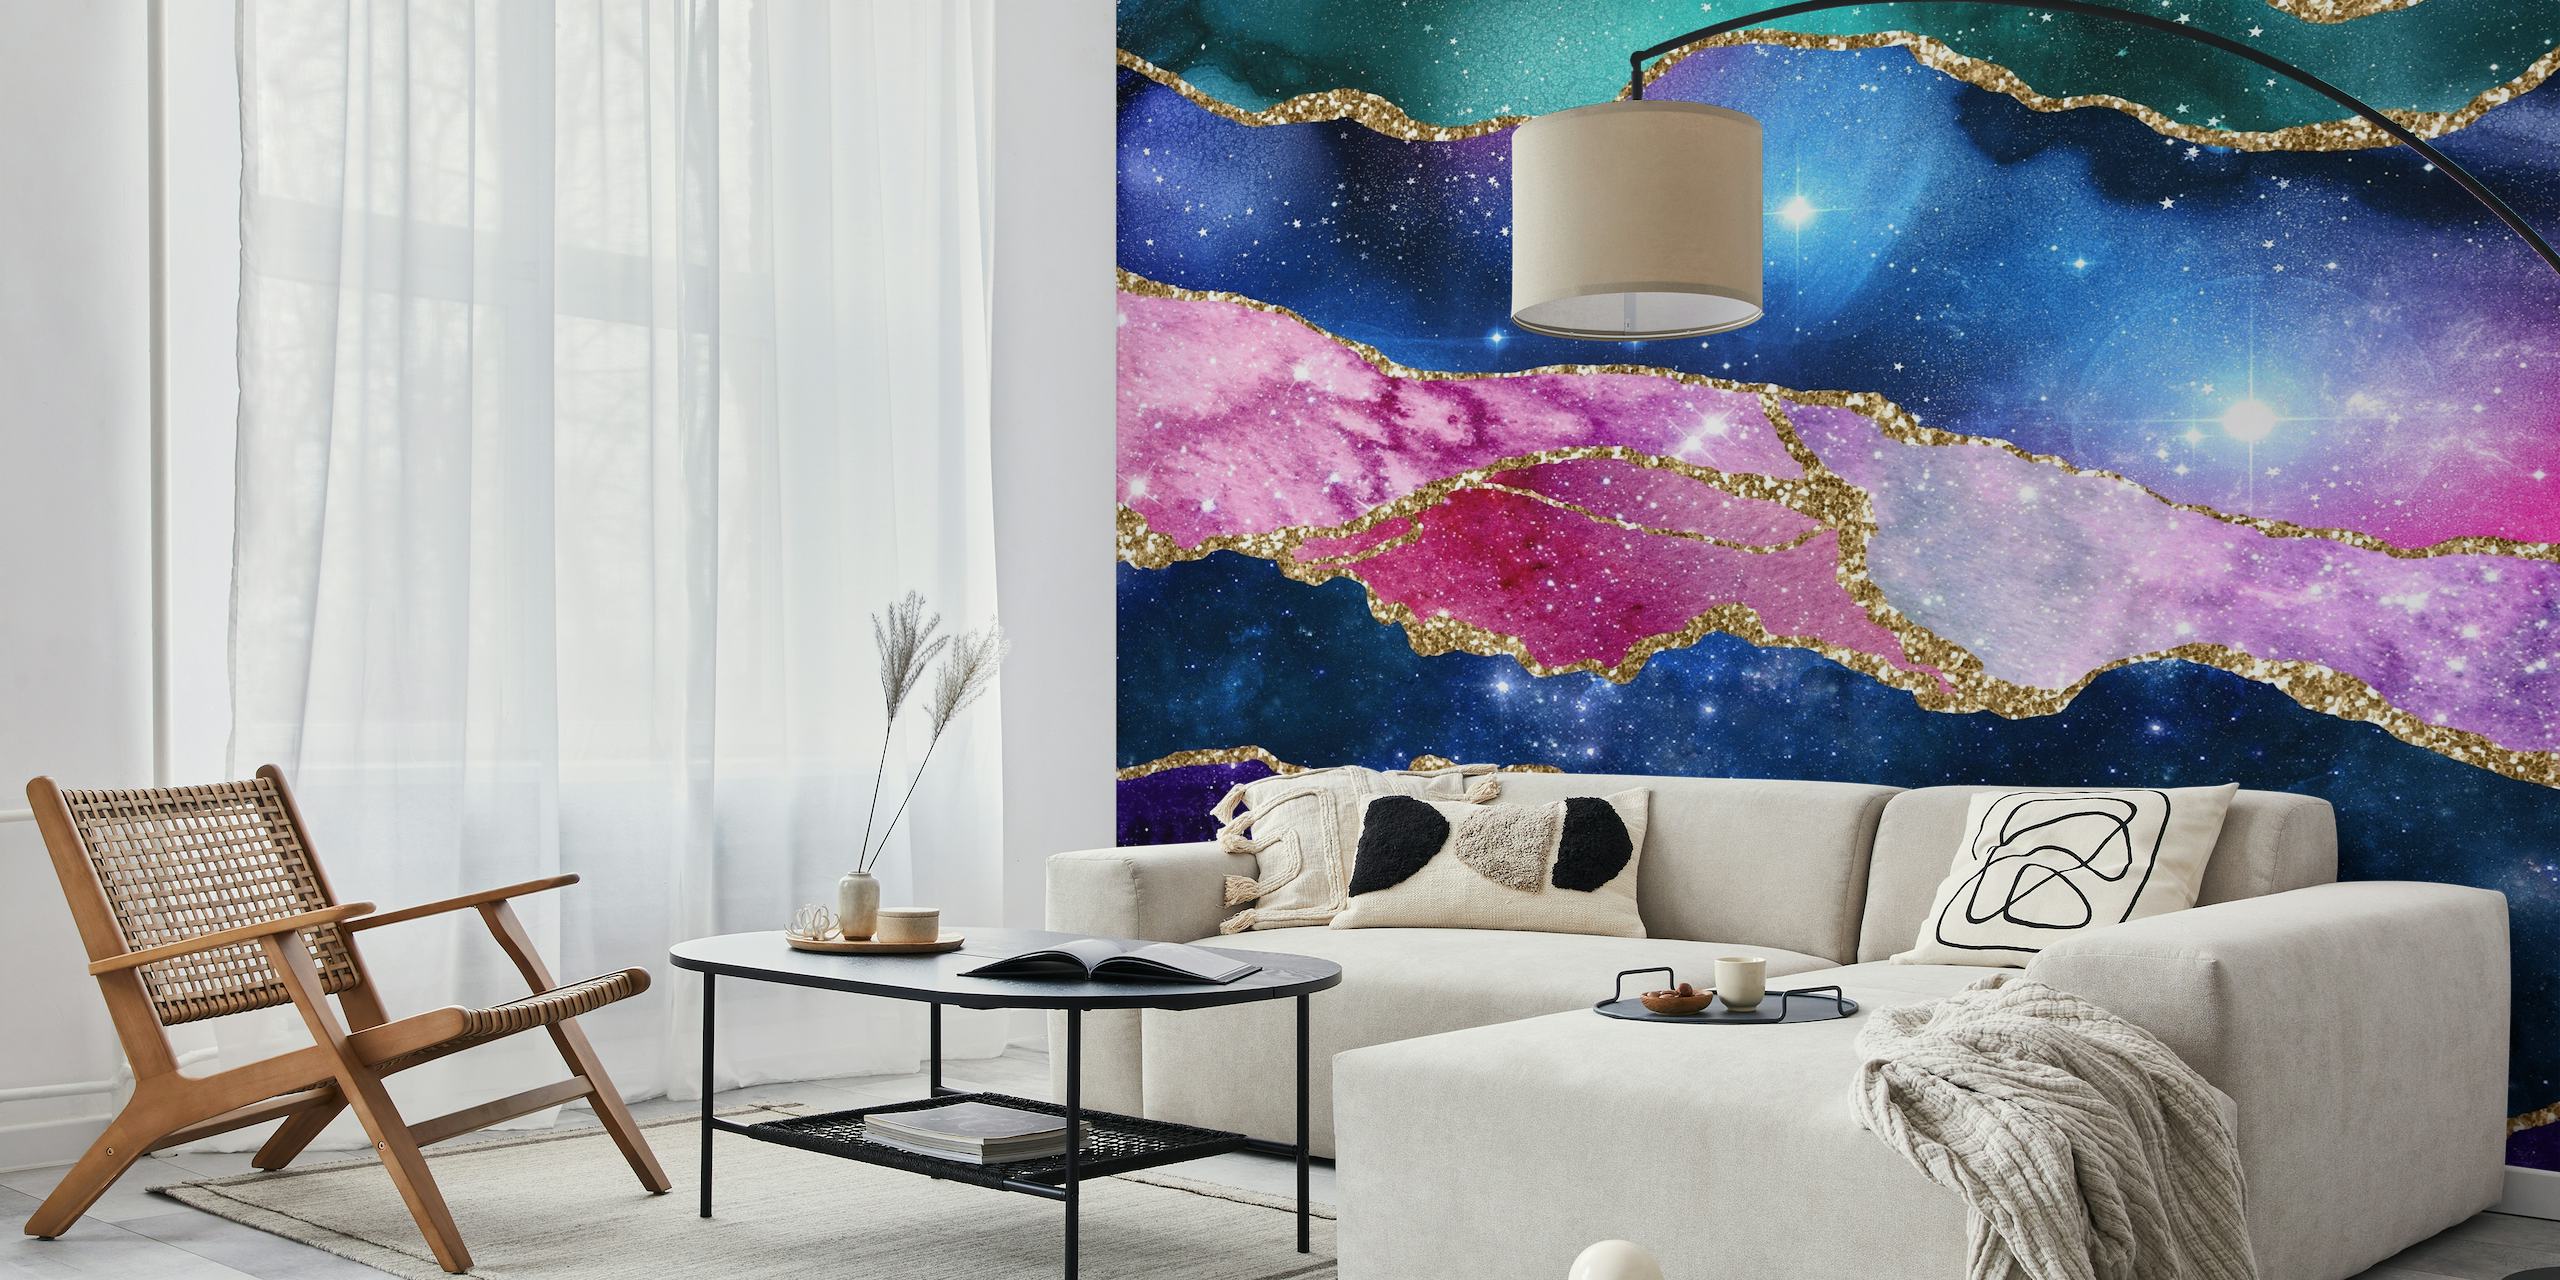 Padrão de mármore rosa e azul com detalhes dourados que lembram uma galáxia